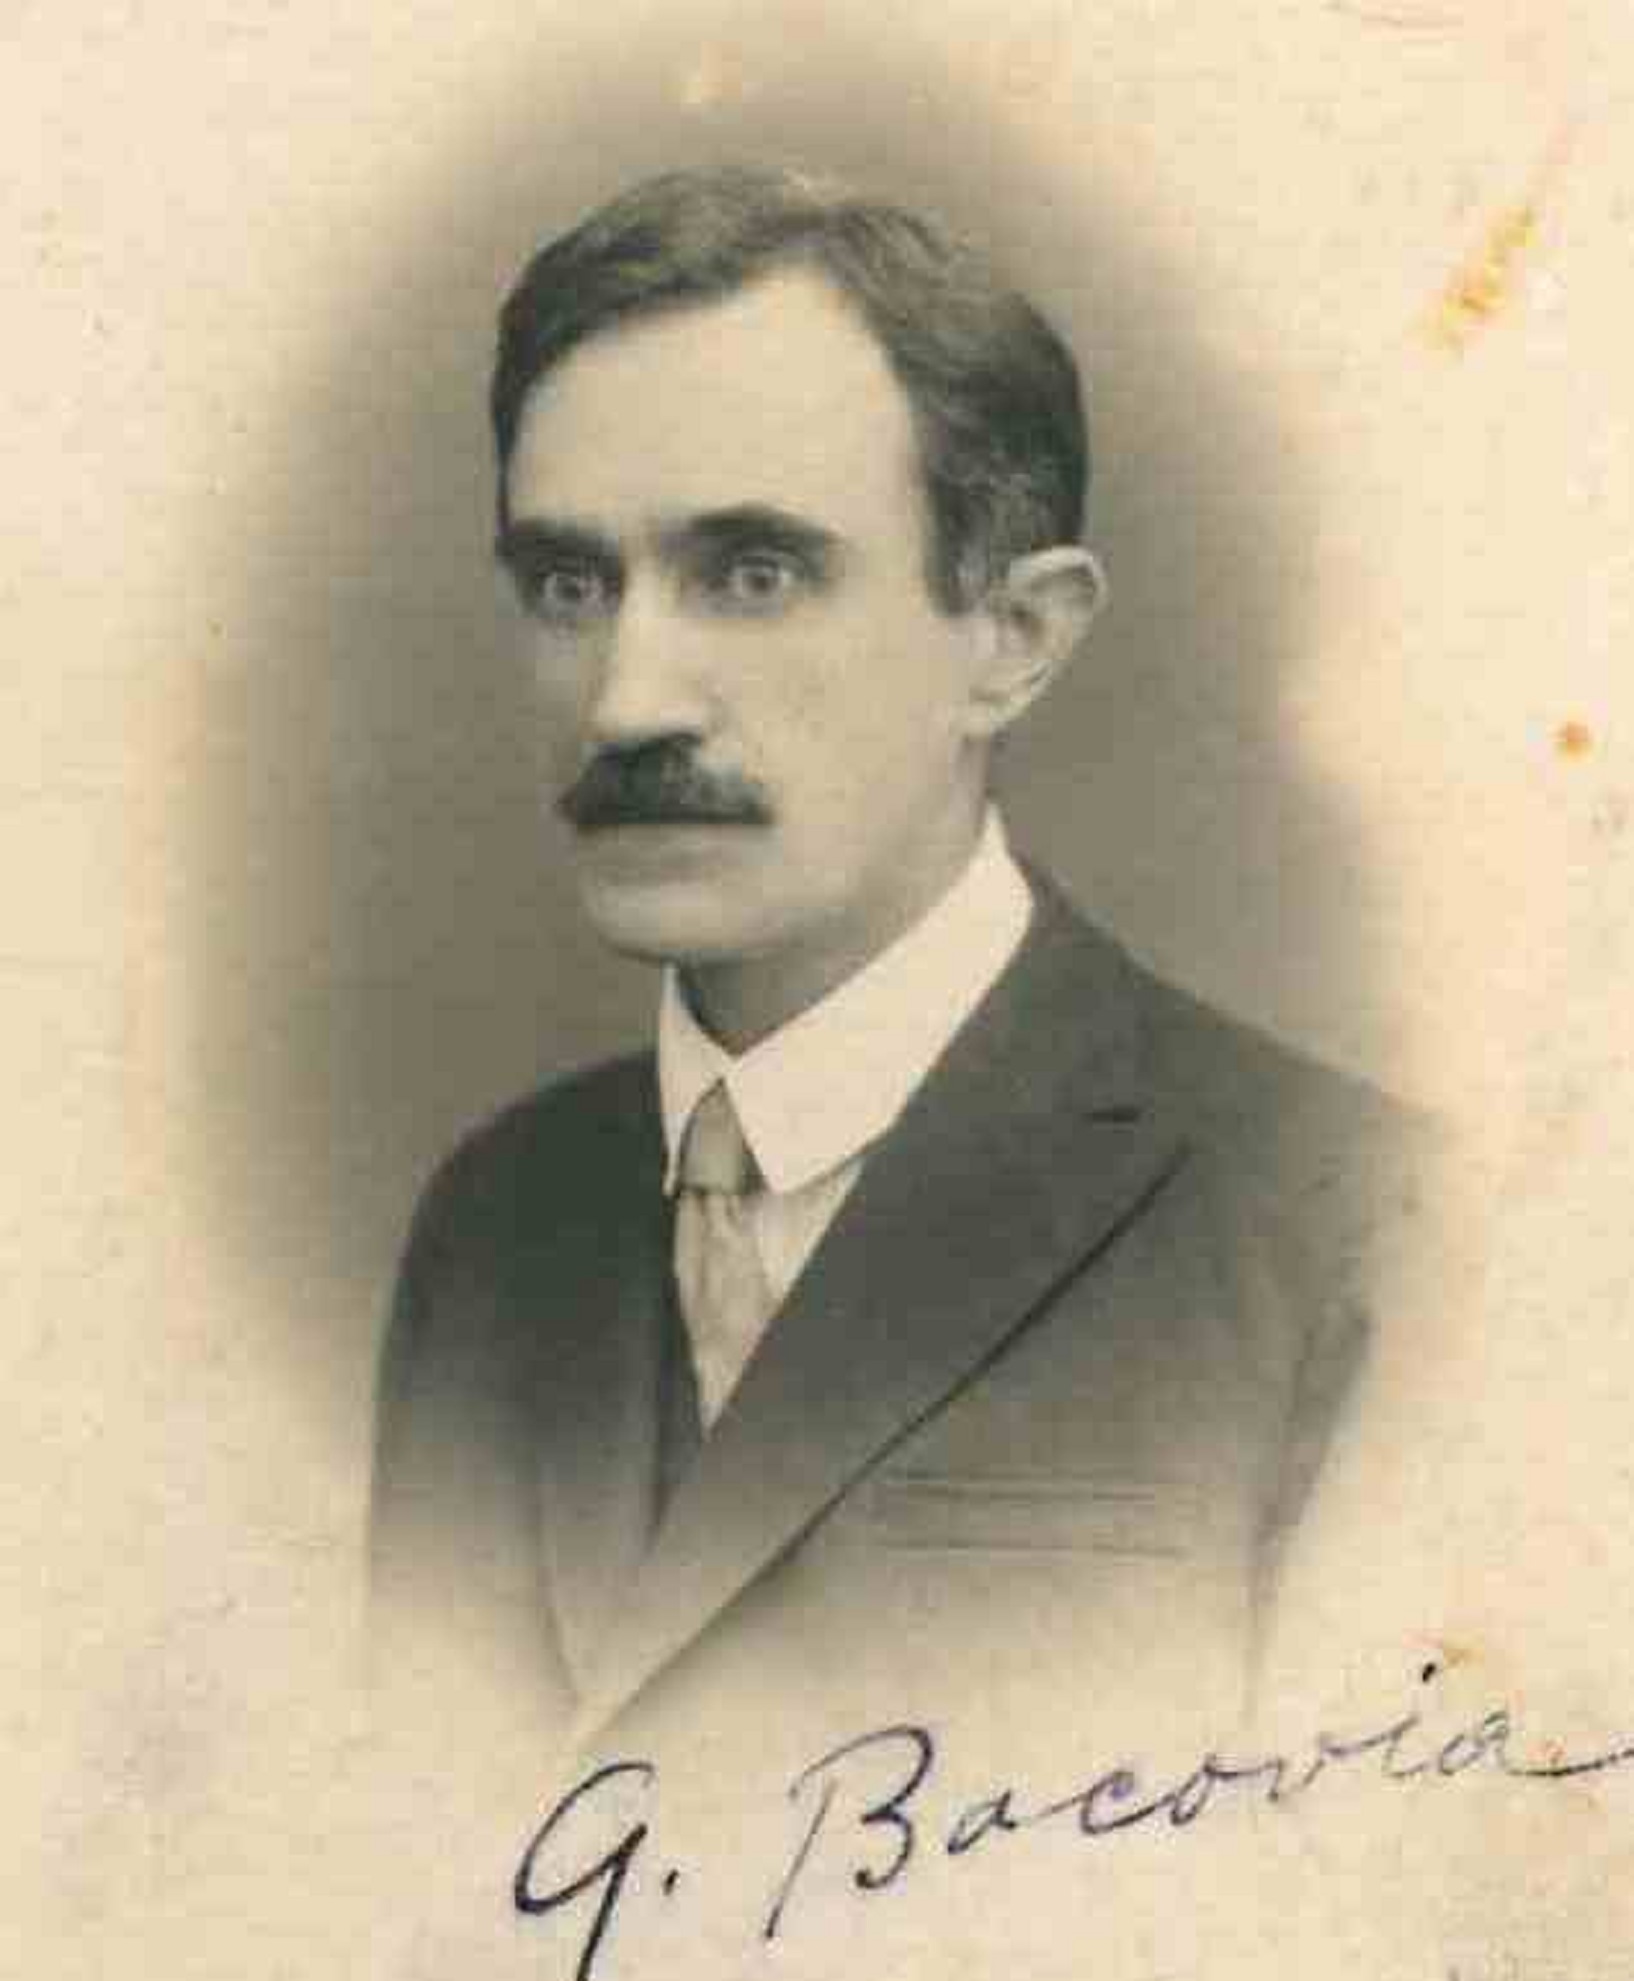 George Bacovia nu zâmbea nici măcar în poza de la nunta sa. Imagini unicat  din Arhivele Naționale. Istoria secretă – Evenimentul Zilei